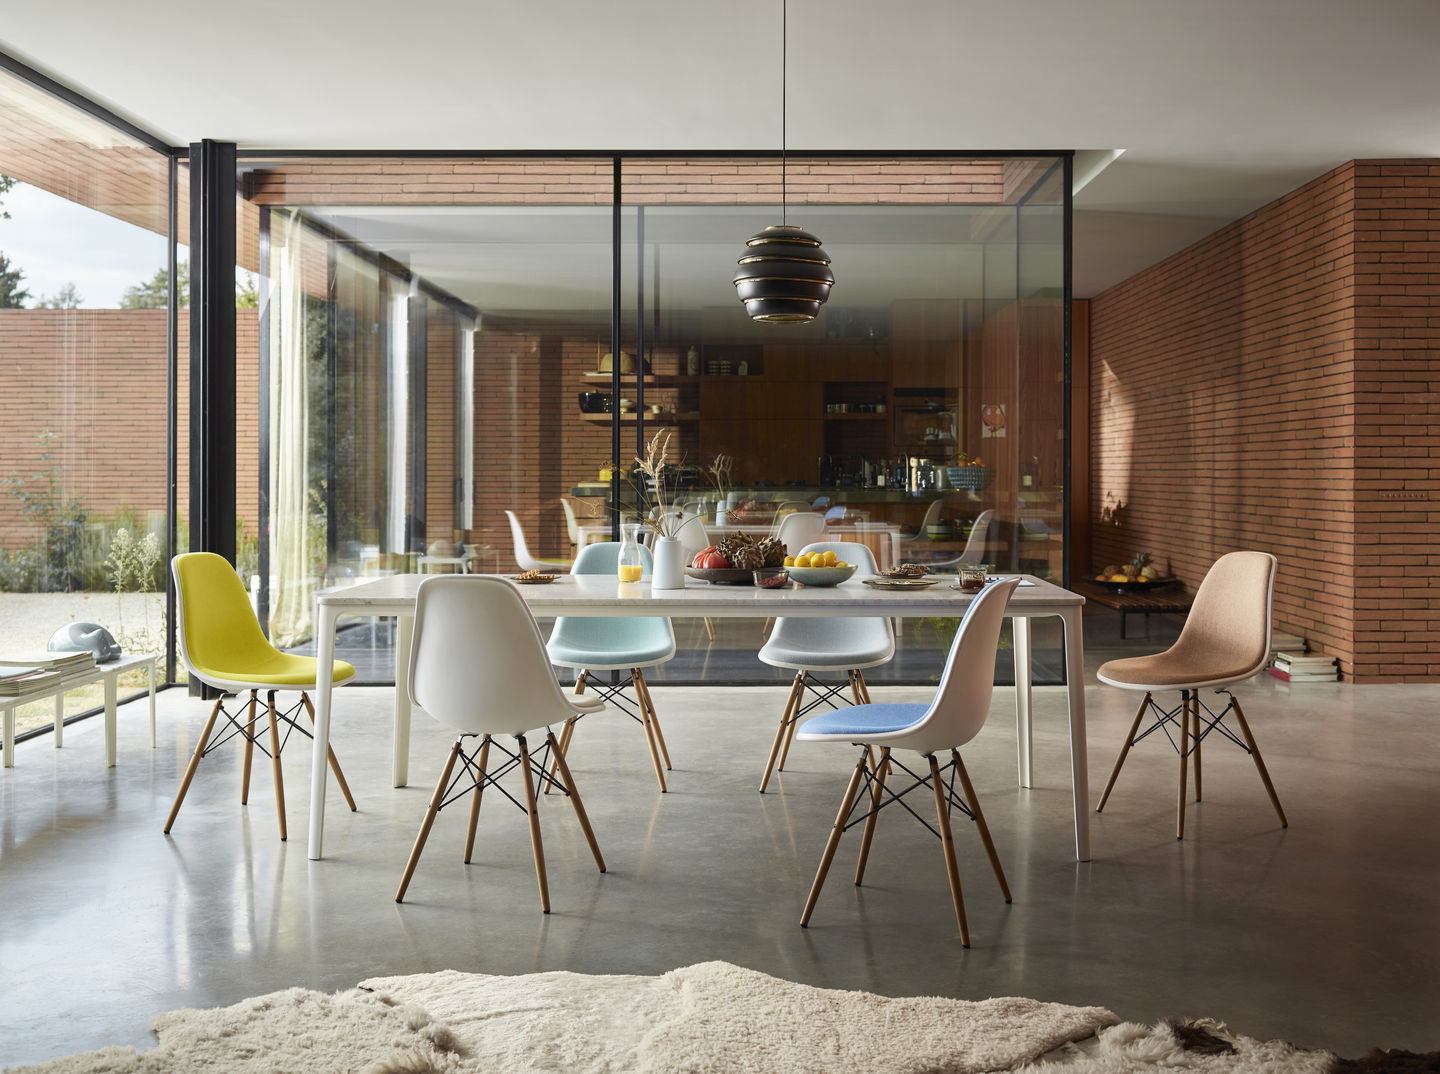 Plate Dining Table in einem Esszimmer mit Deko und Eames Plastic Chair